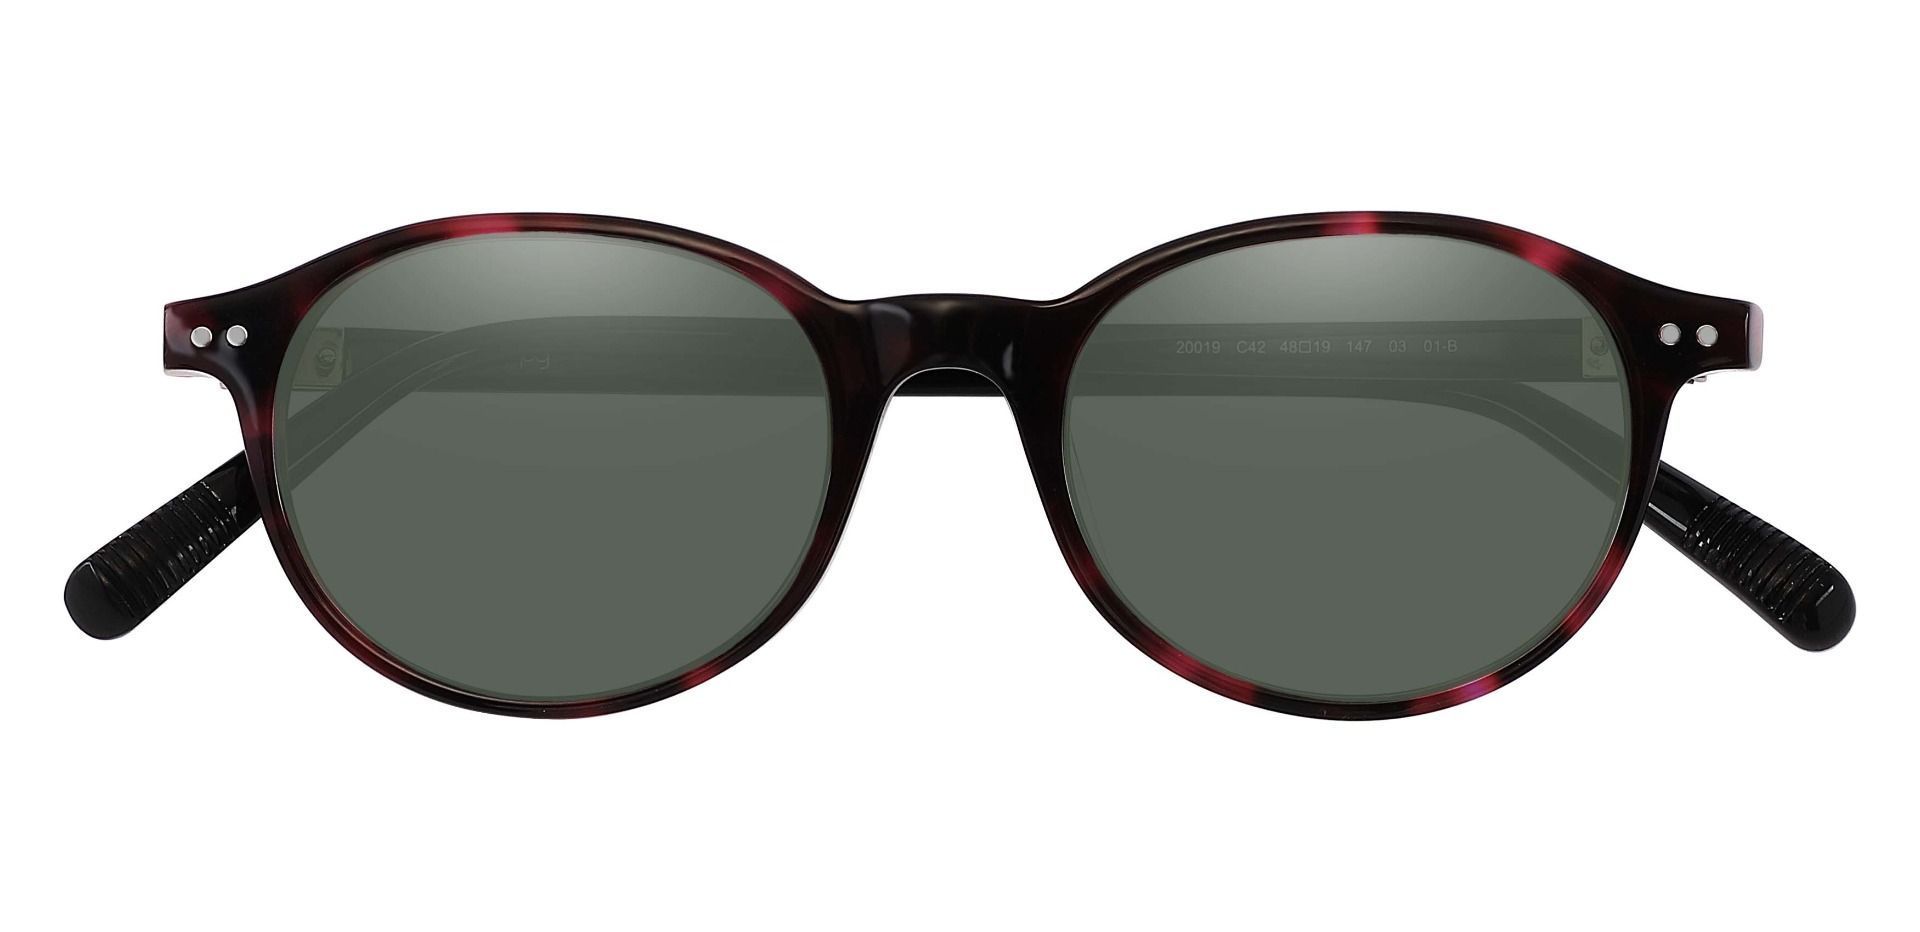 Avon Oval Prescription Sunglasses - Tortoise Frame With Green Lenses